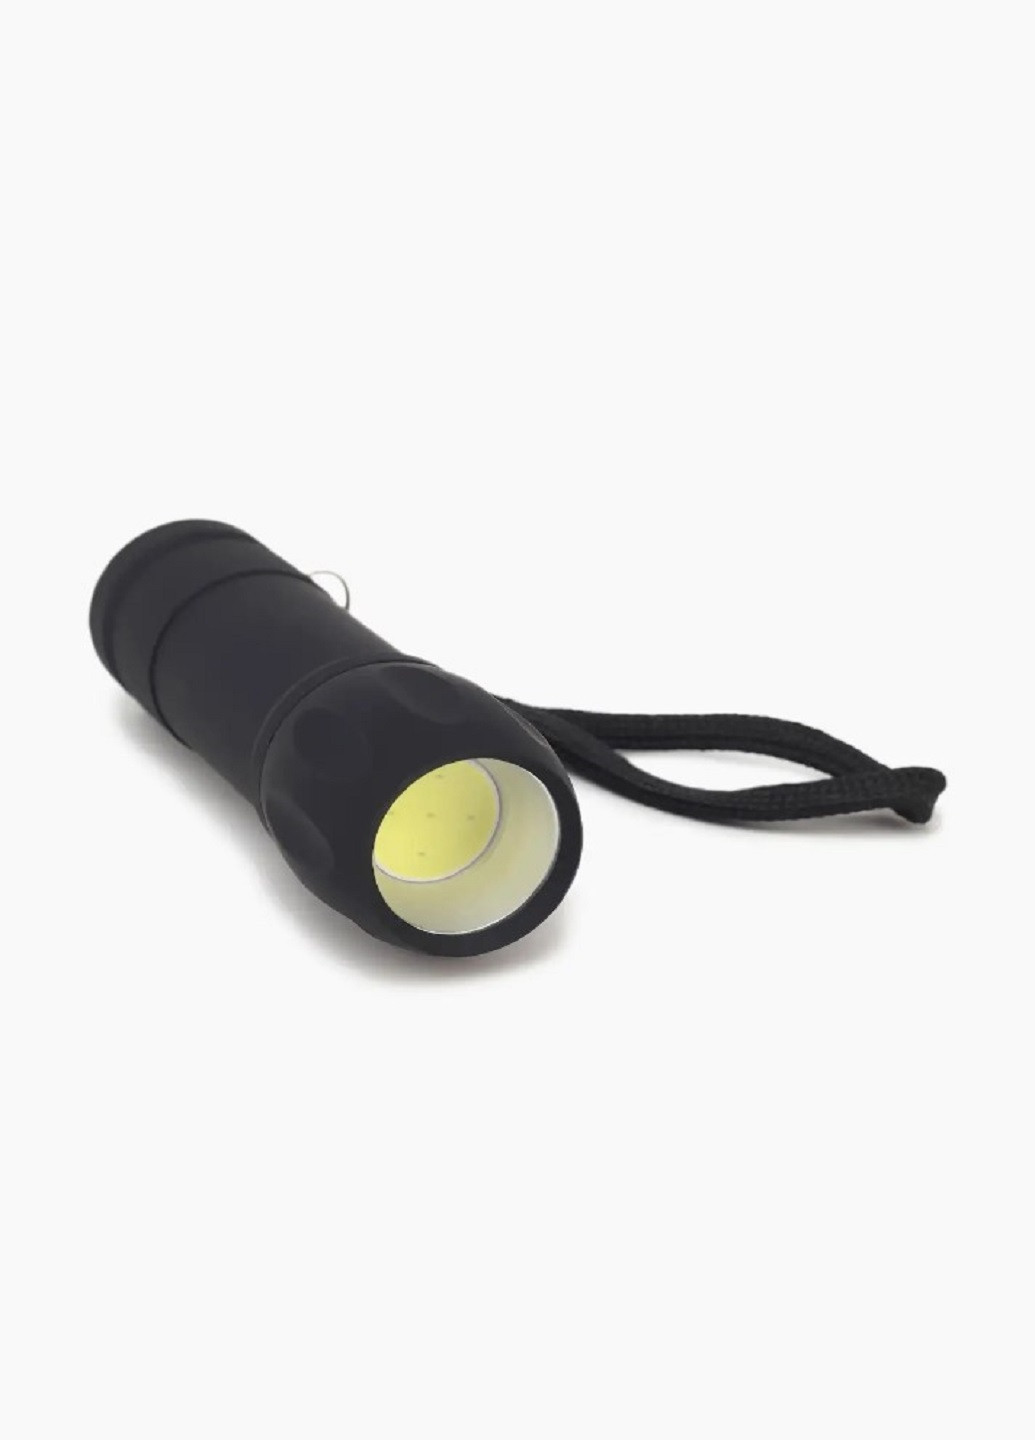 Универсальный ручной фонарь на батарейках K 4160 светодиодный Черный VTech (257087048)